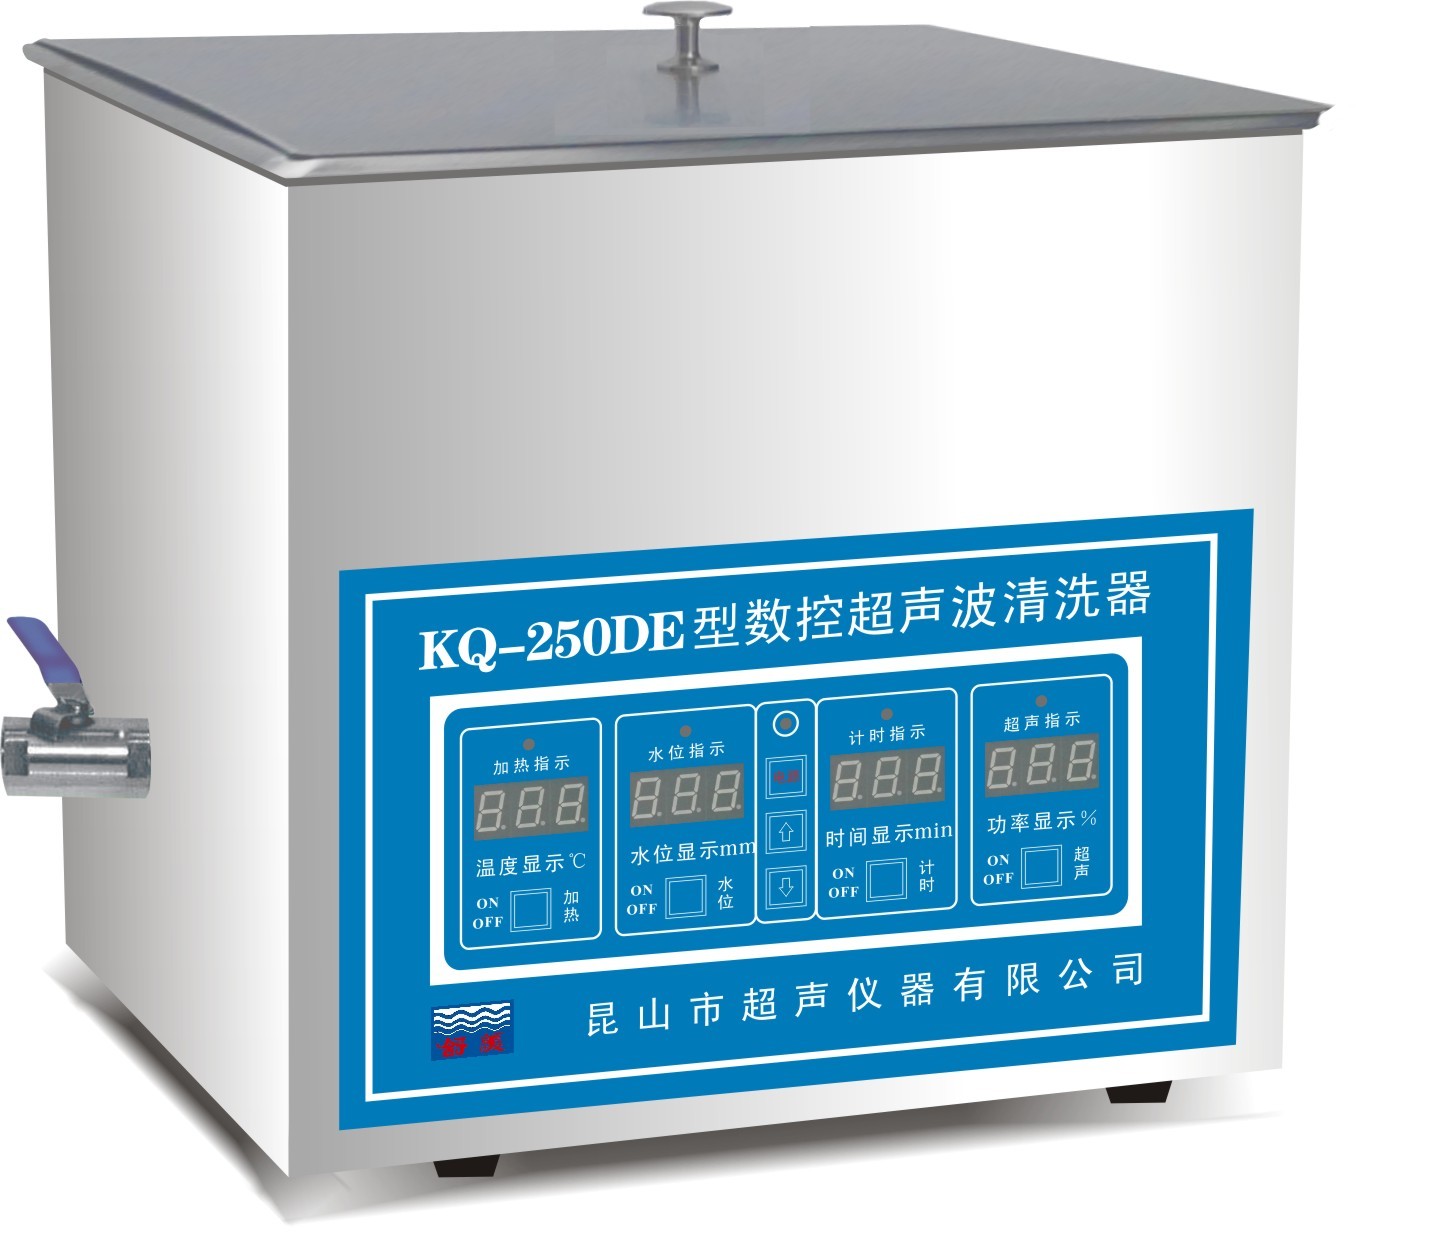 舒美牌 KQ-250DE 台式数控超声波清洗器